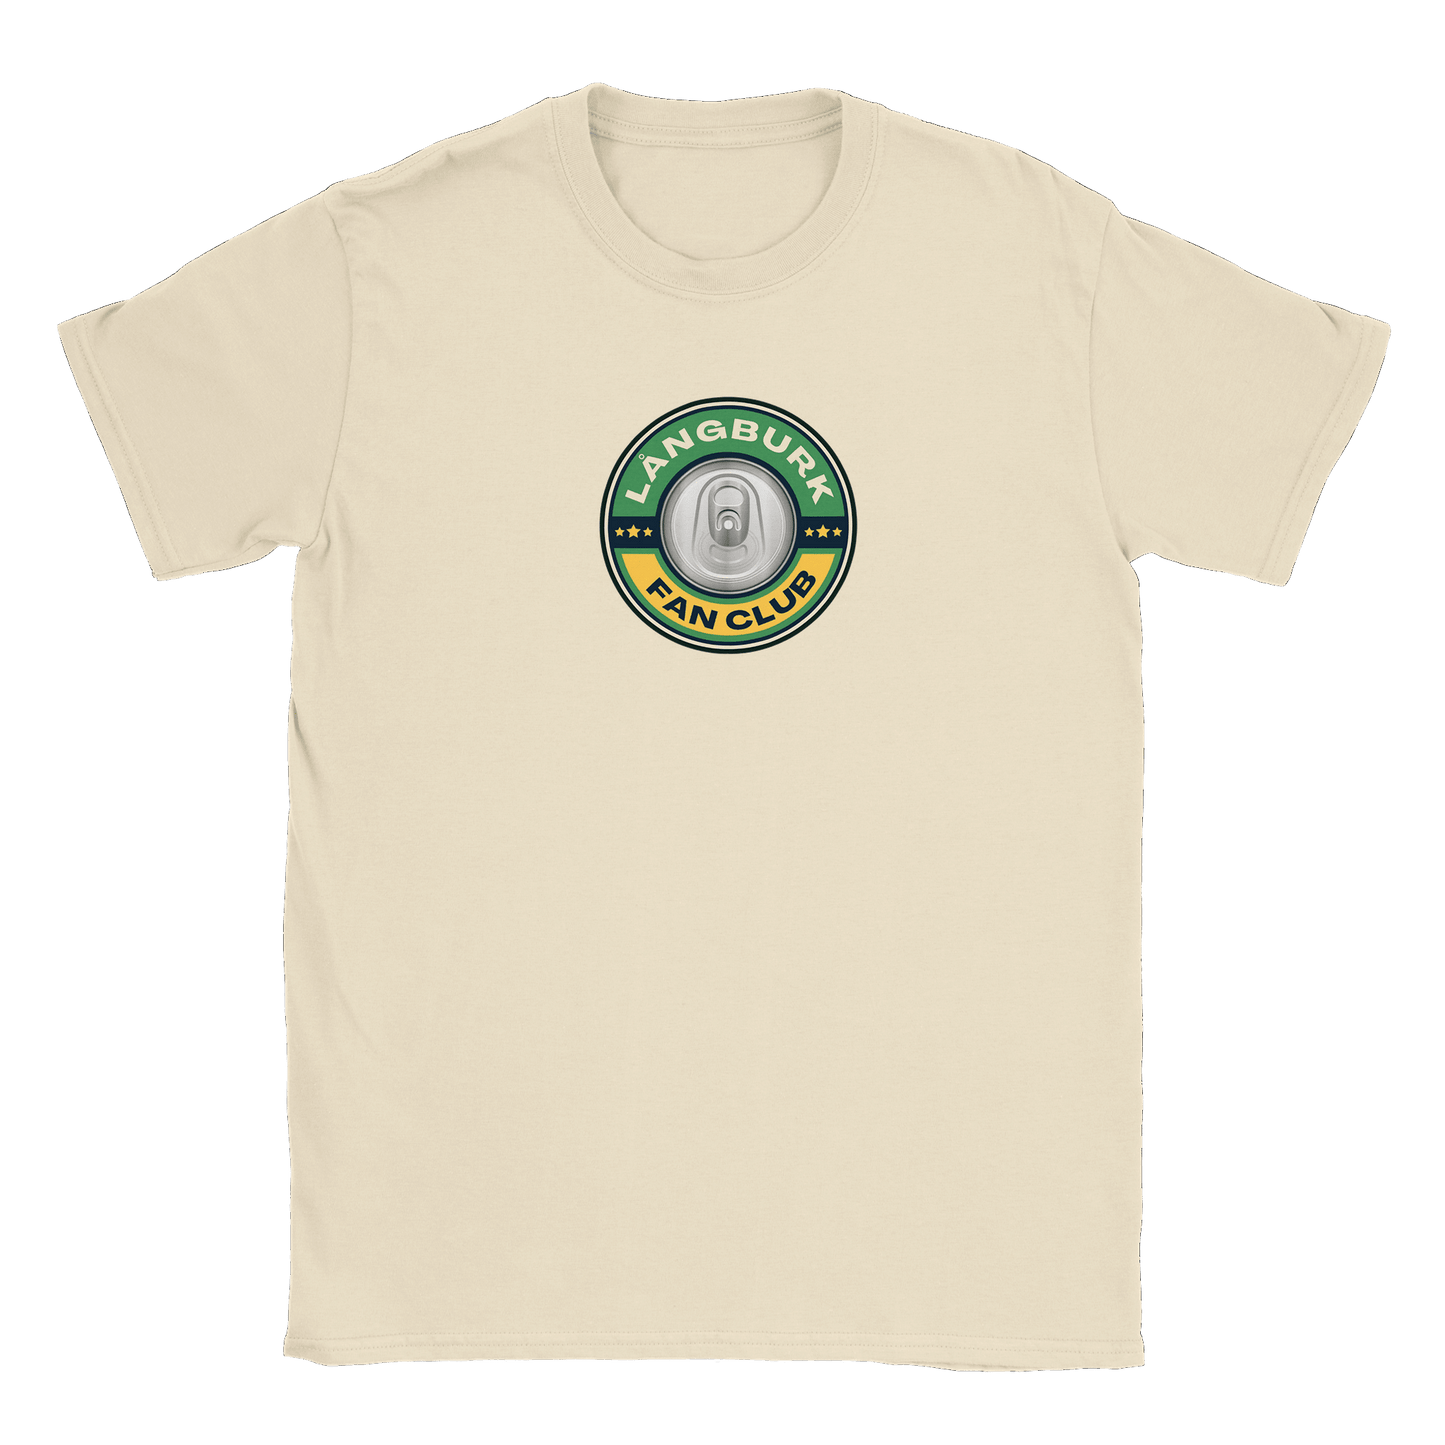 Långburk Fan Club - T-shirt Beige